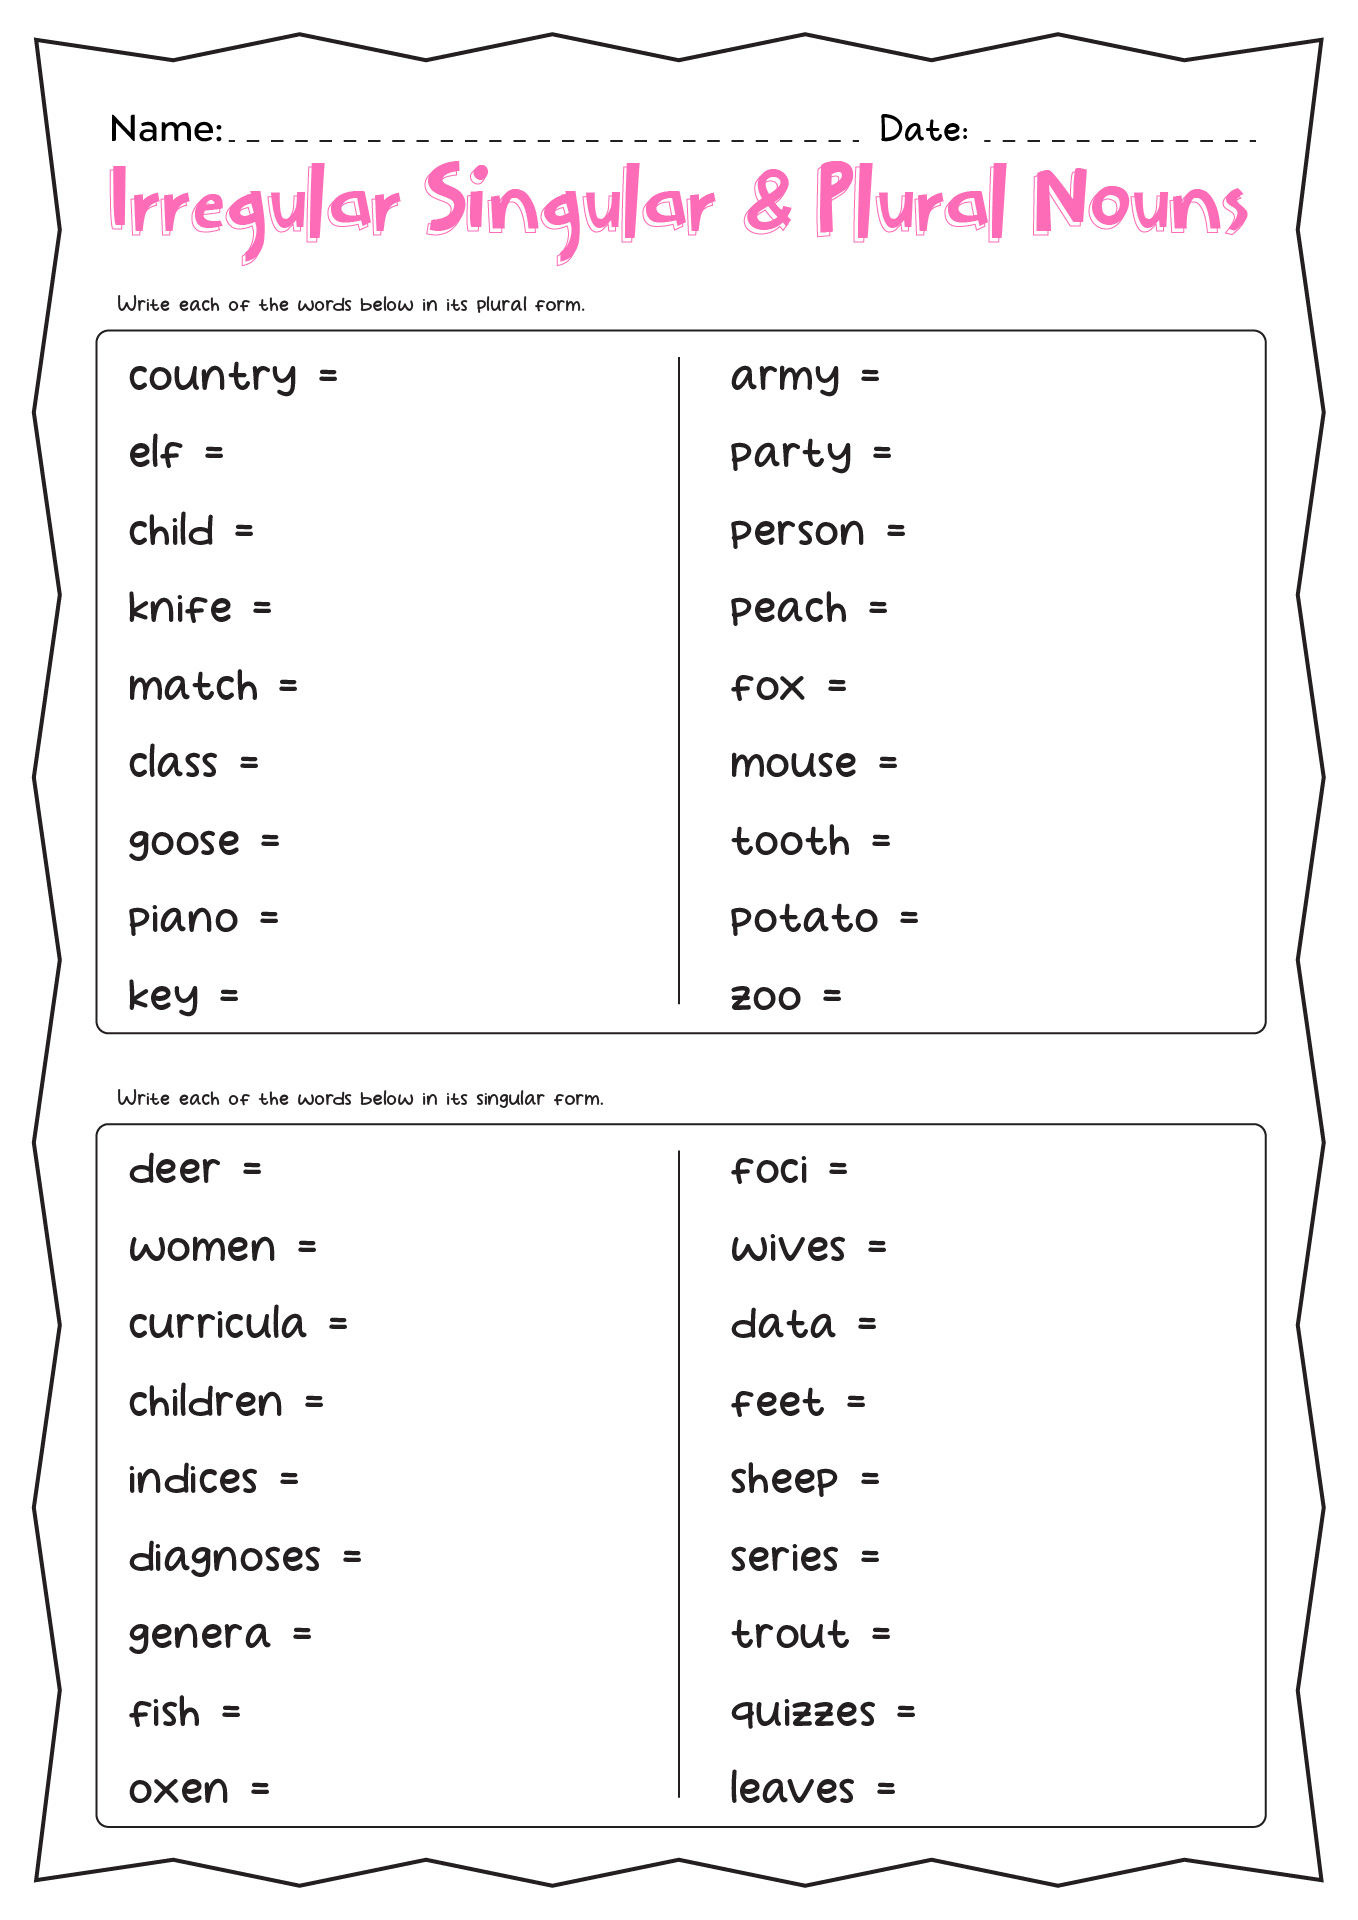 Irregular Singular and Plural Nouns Worksheet